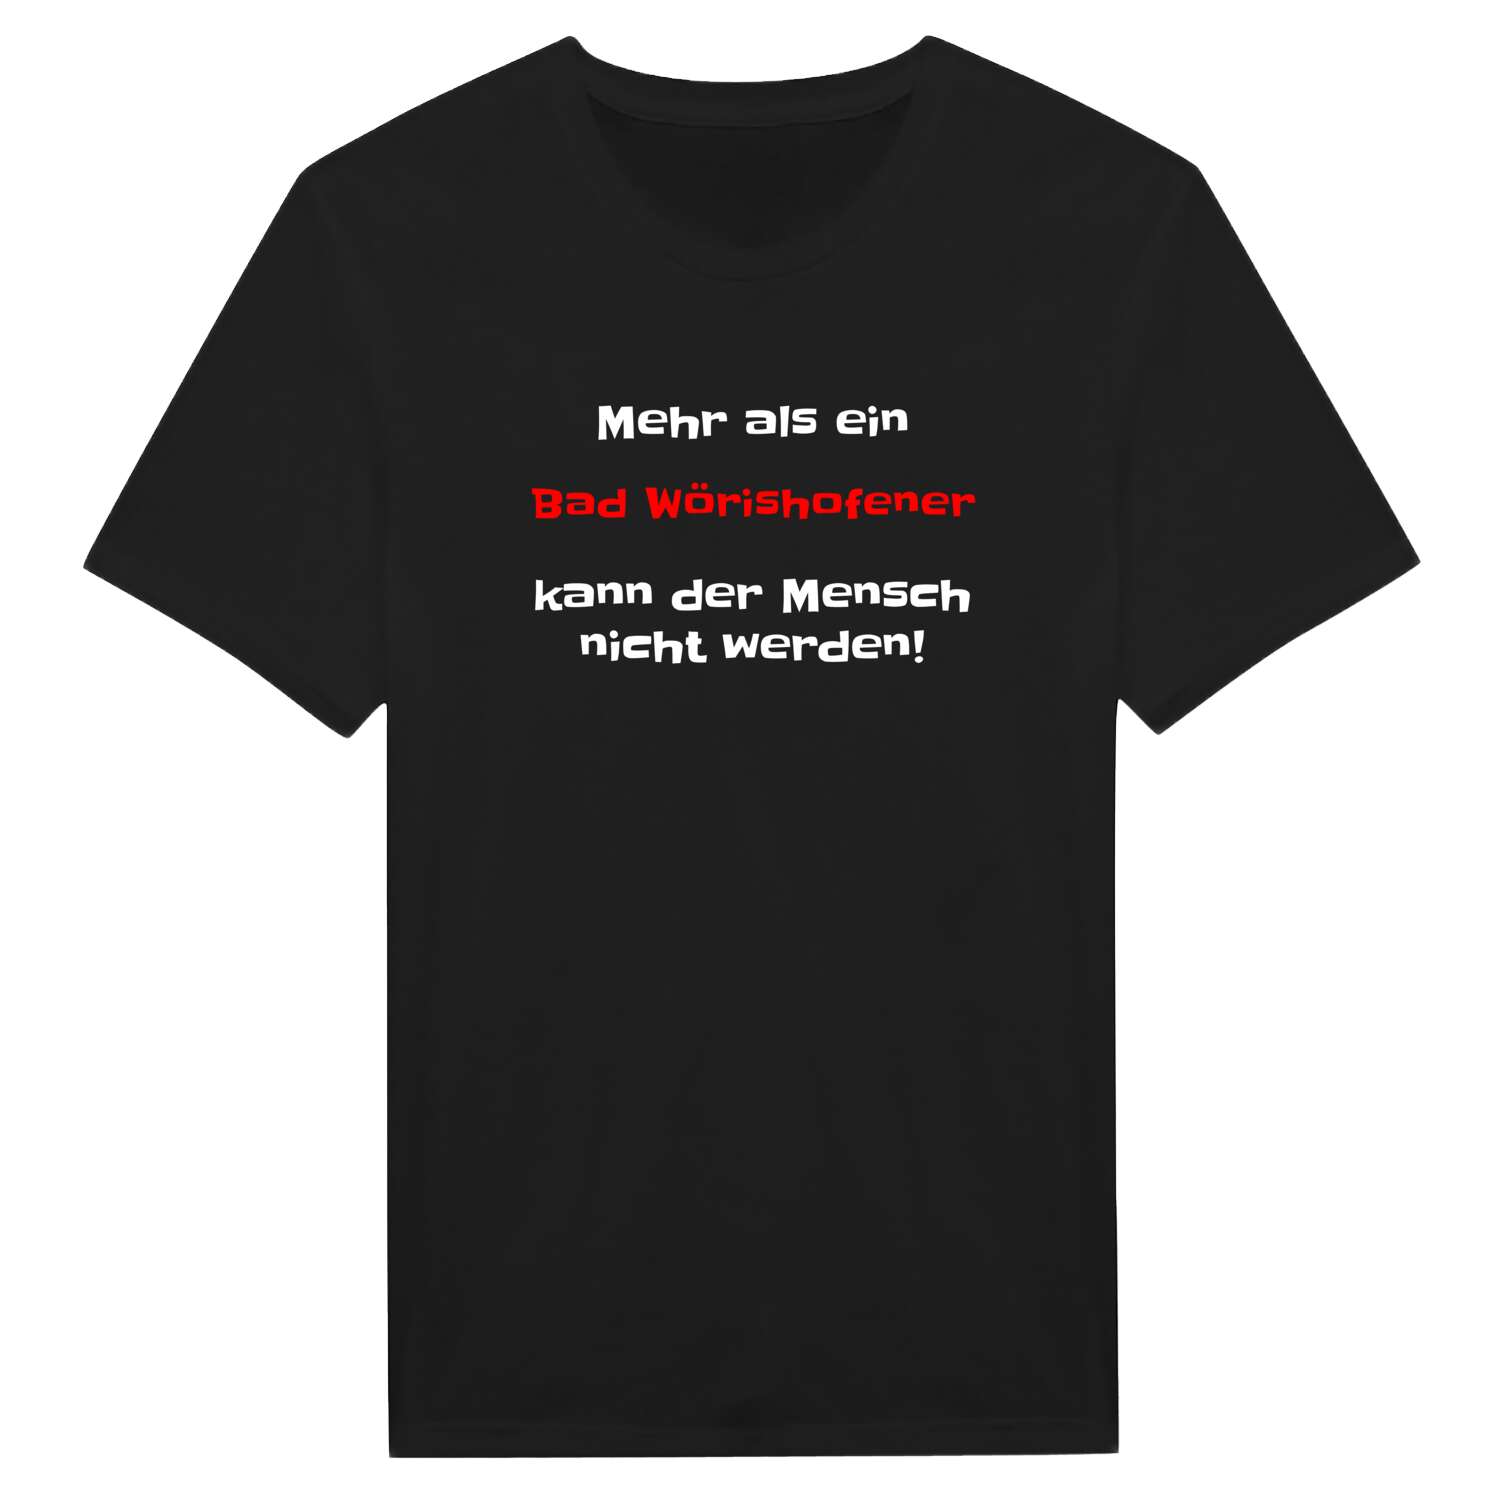 Bad Wörishofen T-Shirt »Mehr als ein«